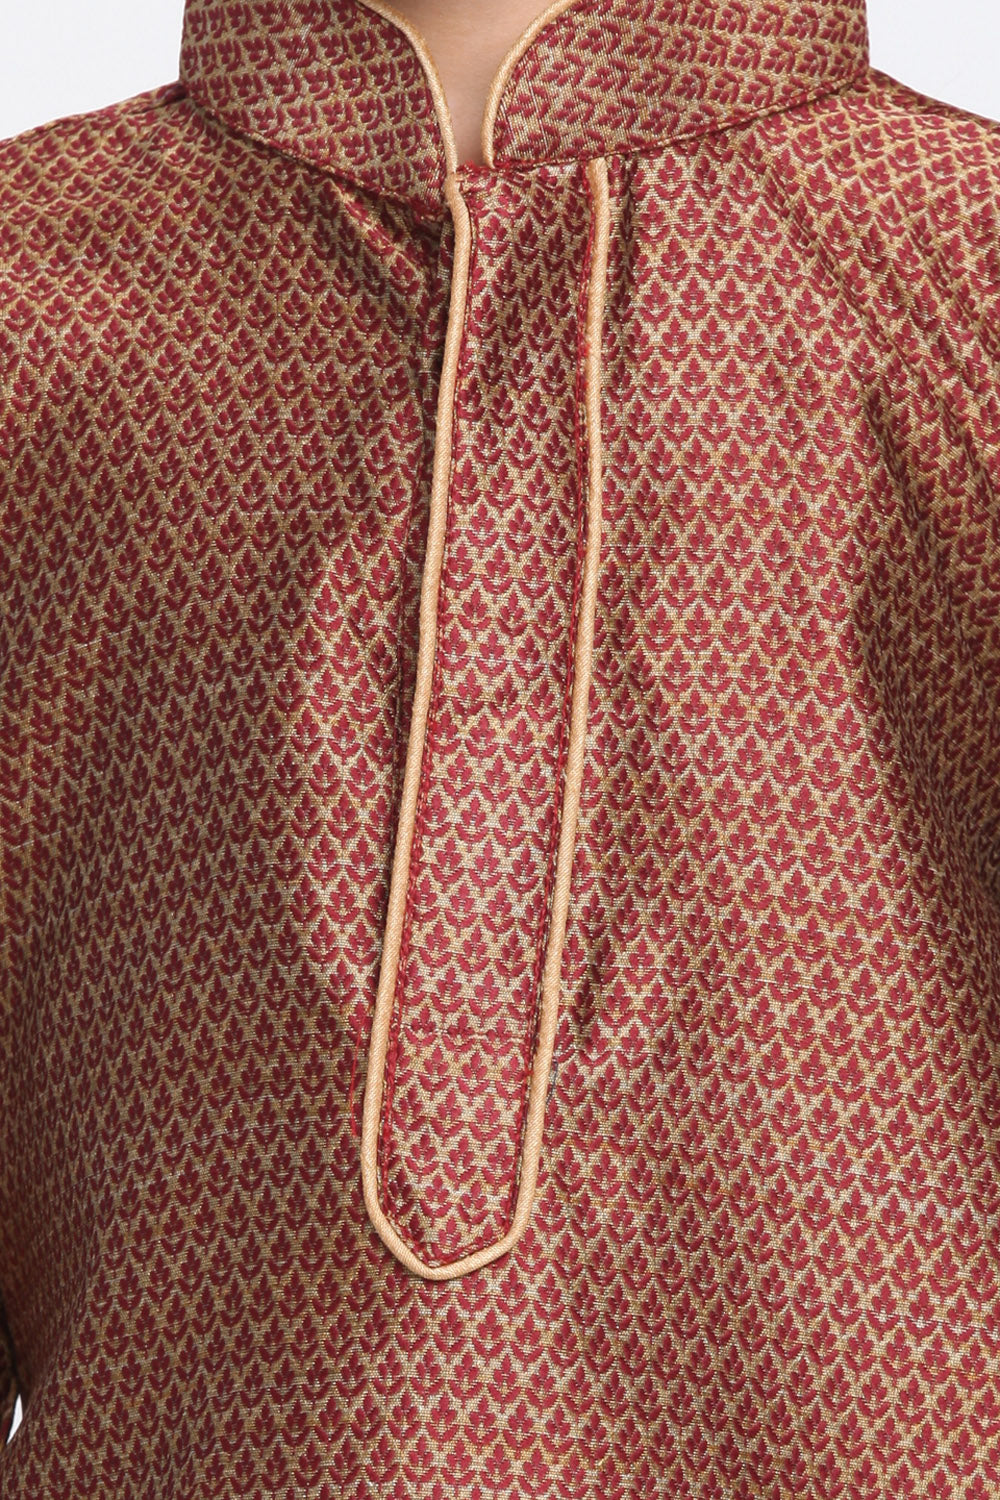 Boy's Cotton Art Silk Kurta Set in Maroon